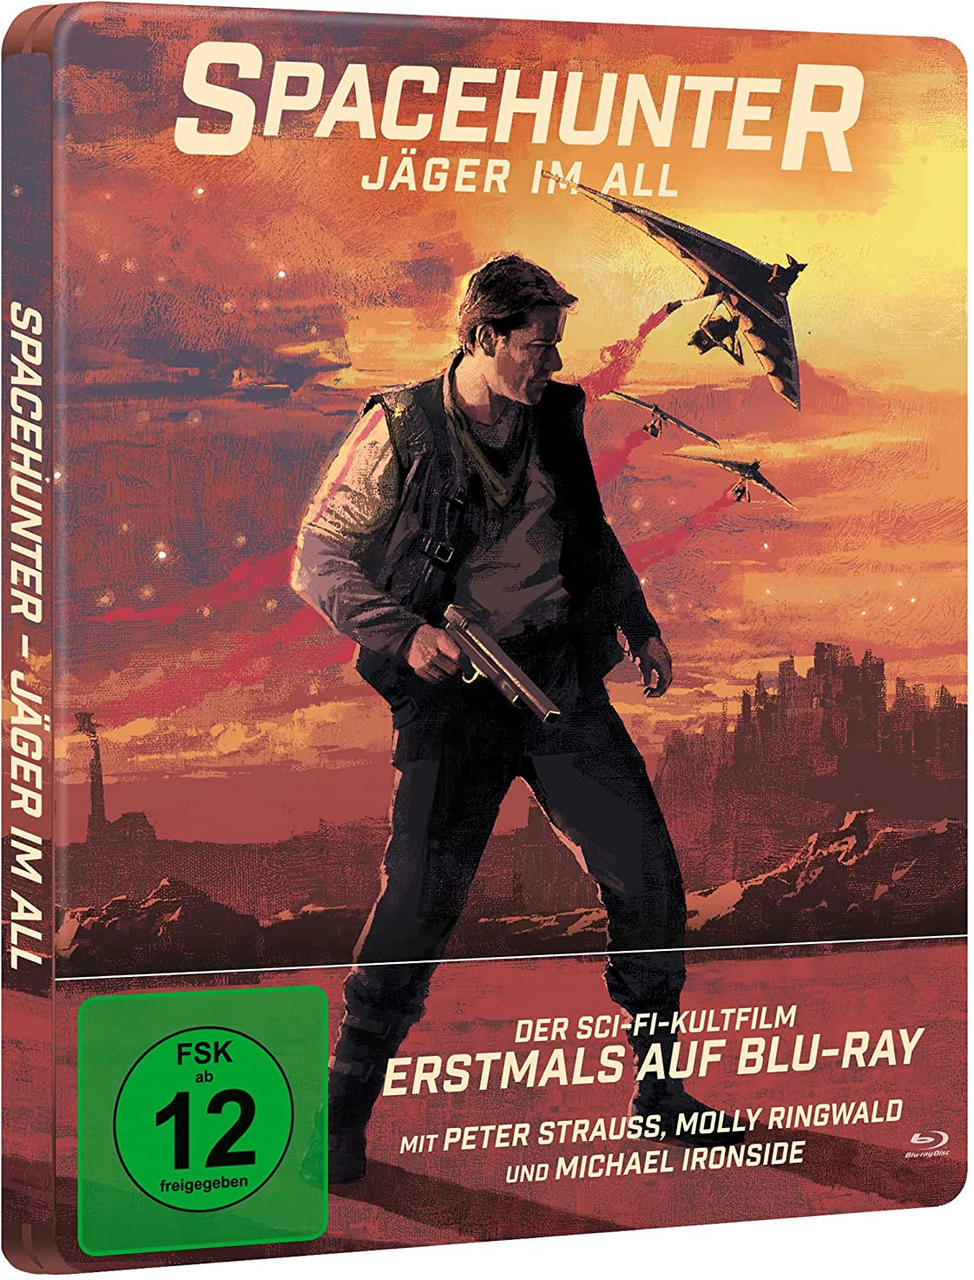 im - Blu-ray Jäger Spacehunter All